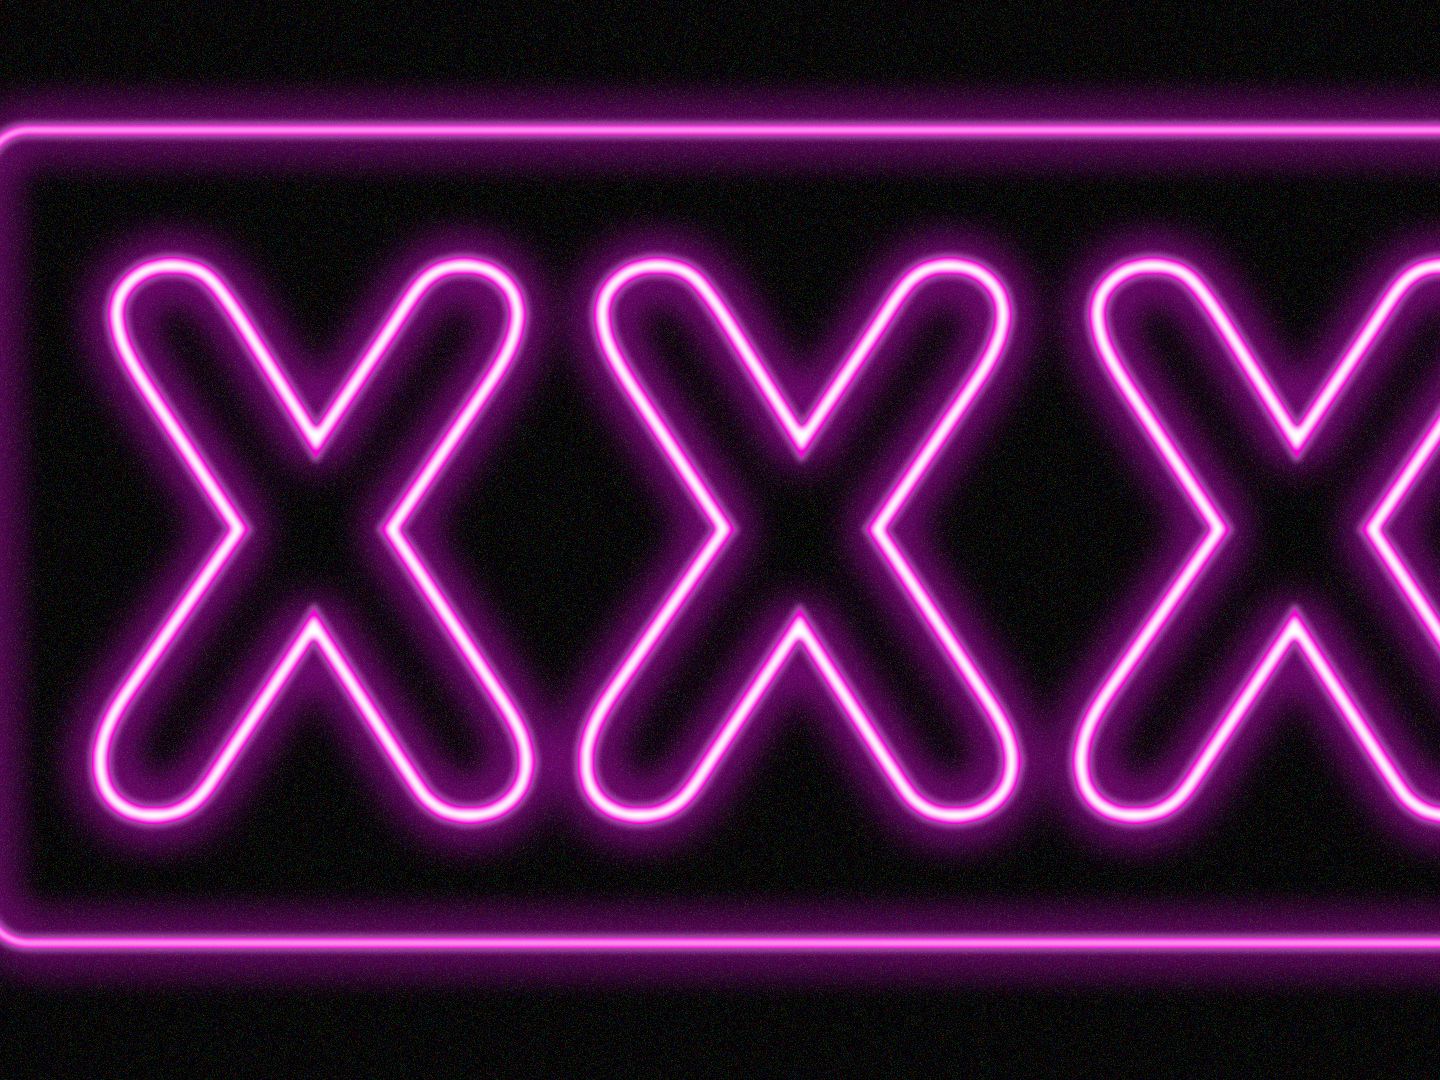 Xxx Vodeo Reap - New Pornhub owner has plans beyond porn